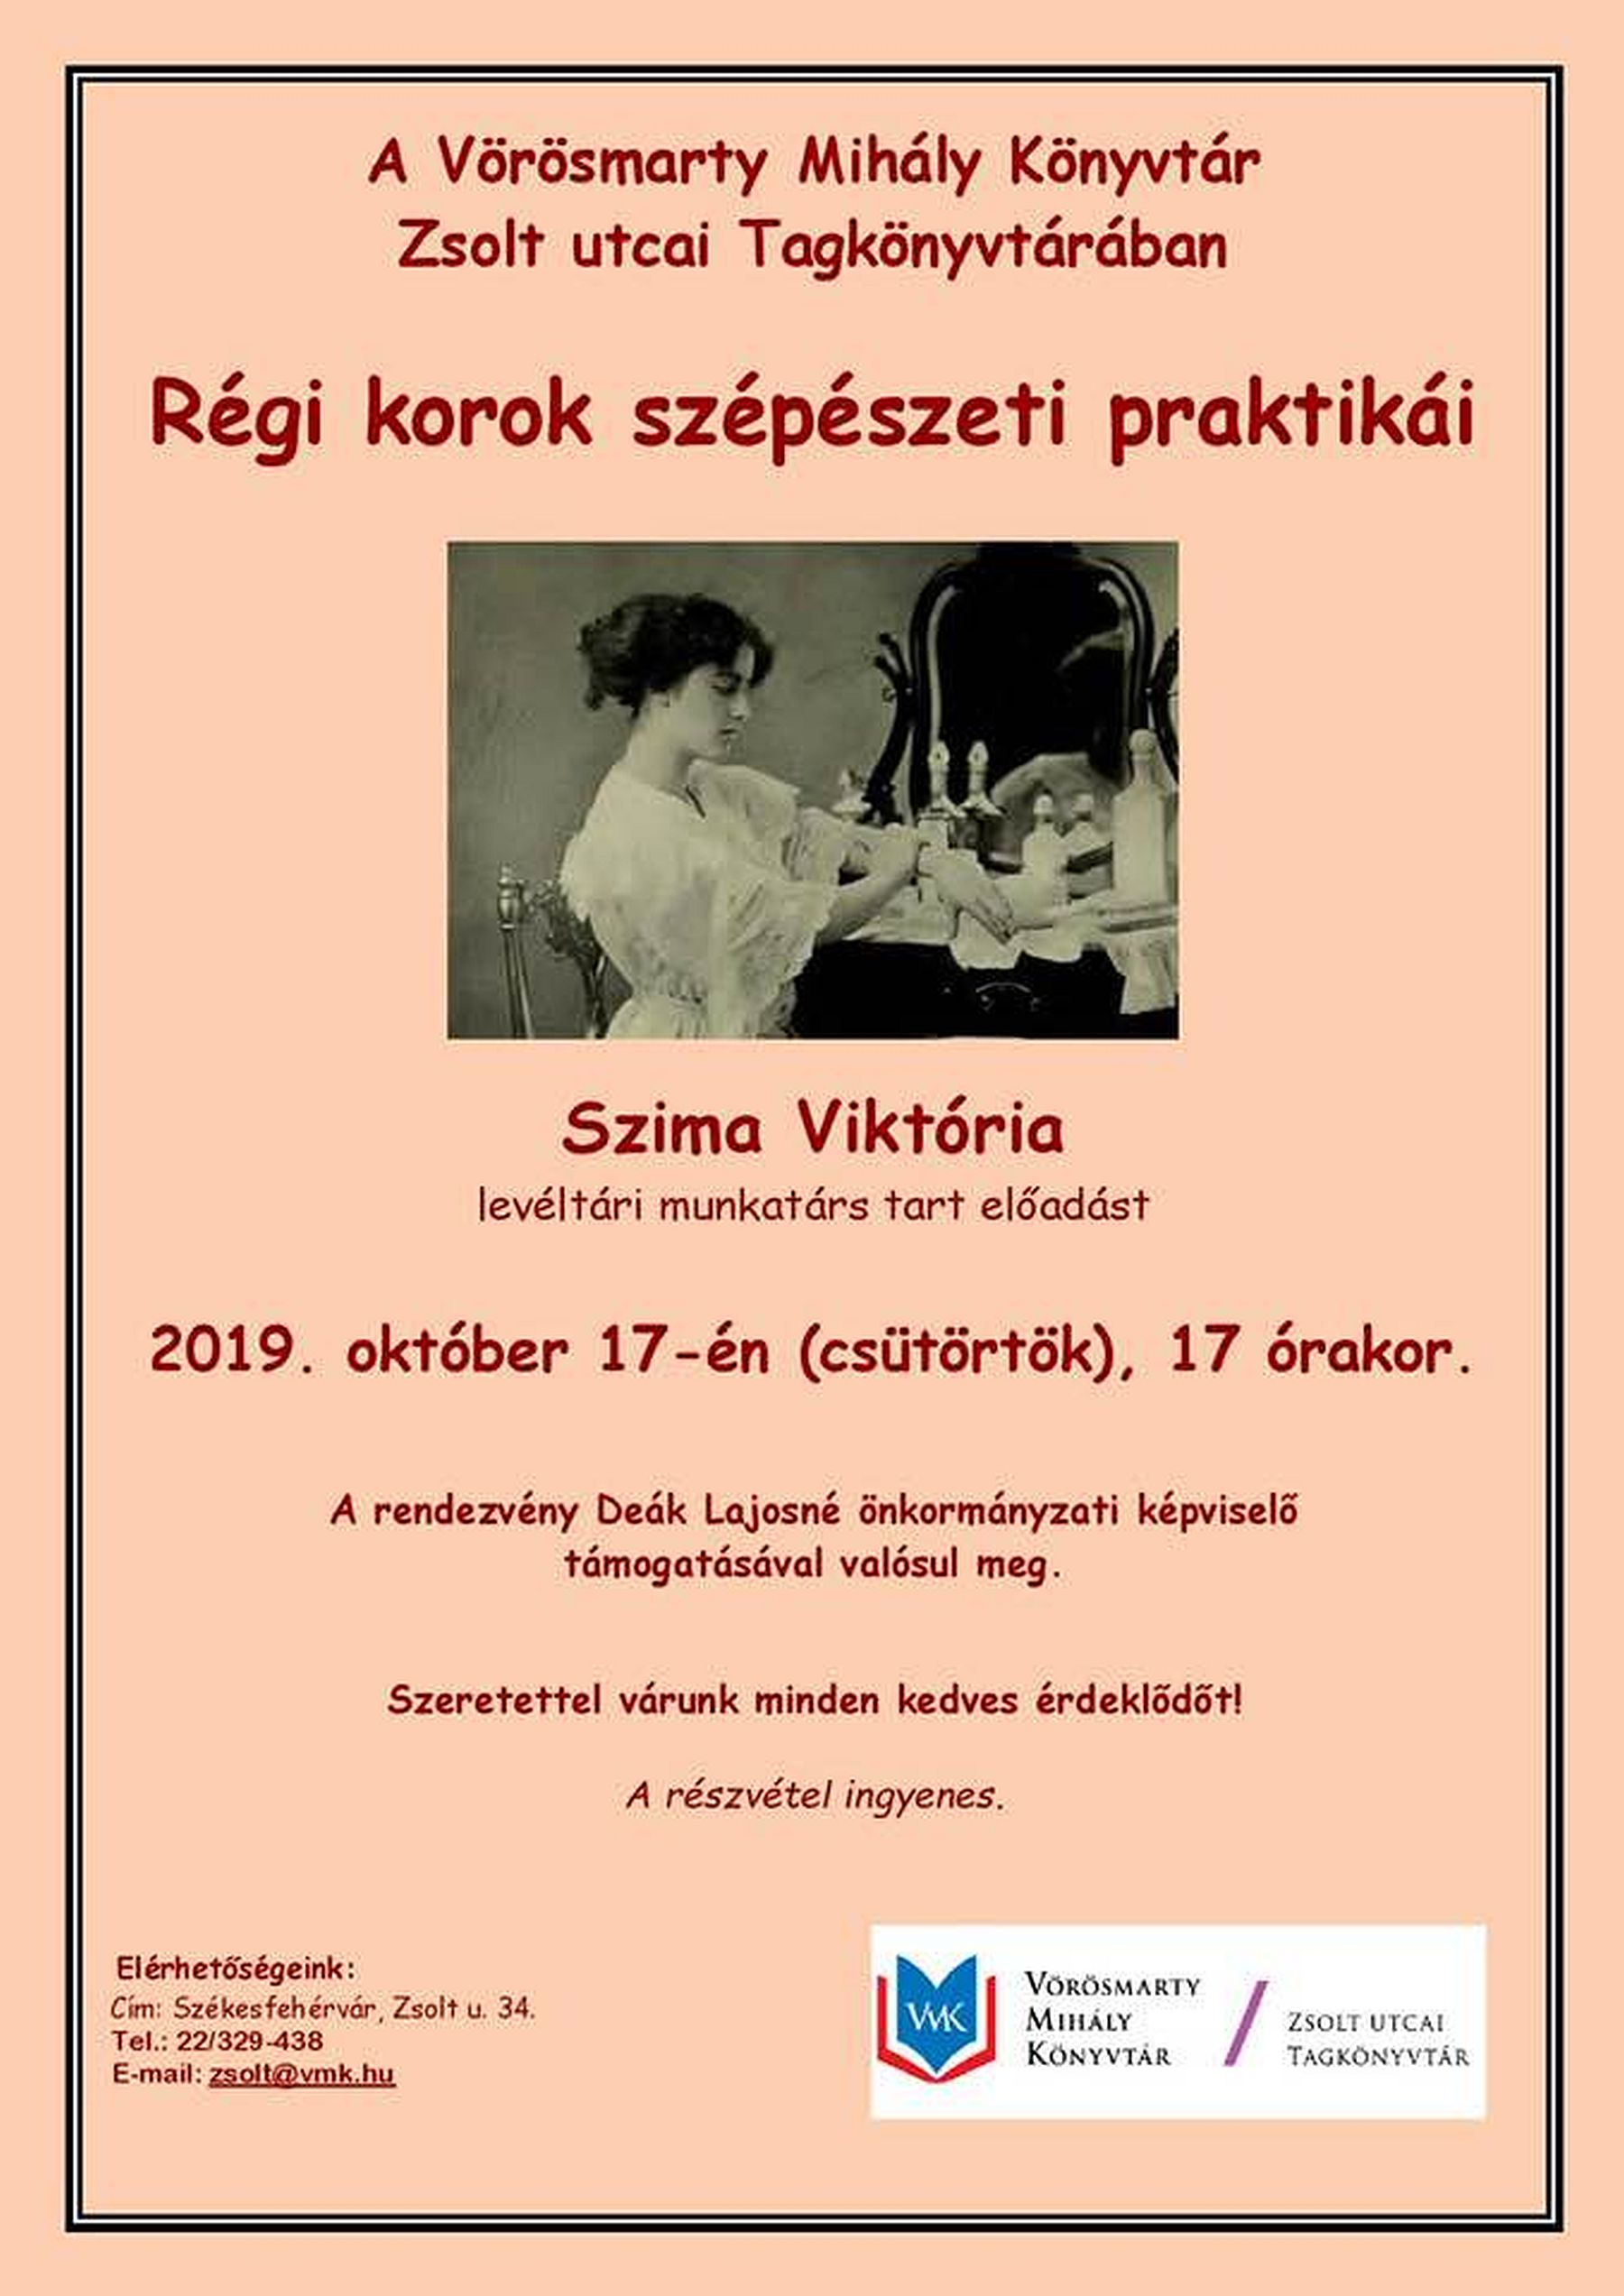 Régi korok szépészeti praktikái - Szima Viktória előadása a Zsolt utcai Tagkönyvtárban